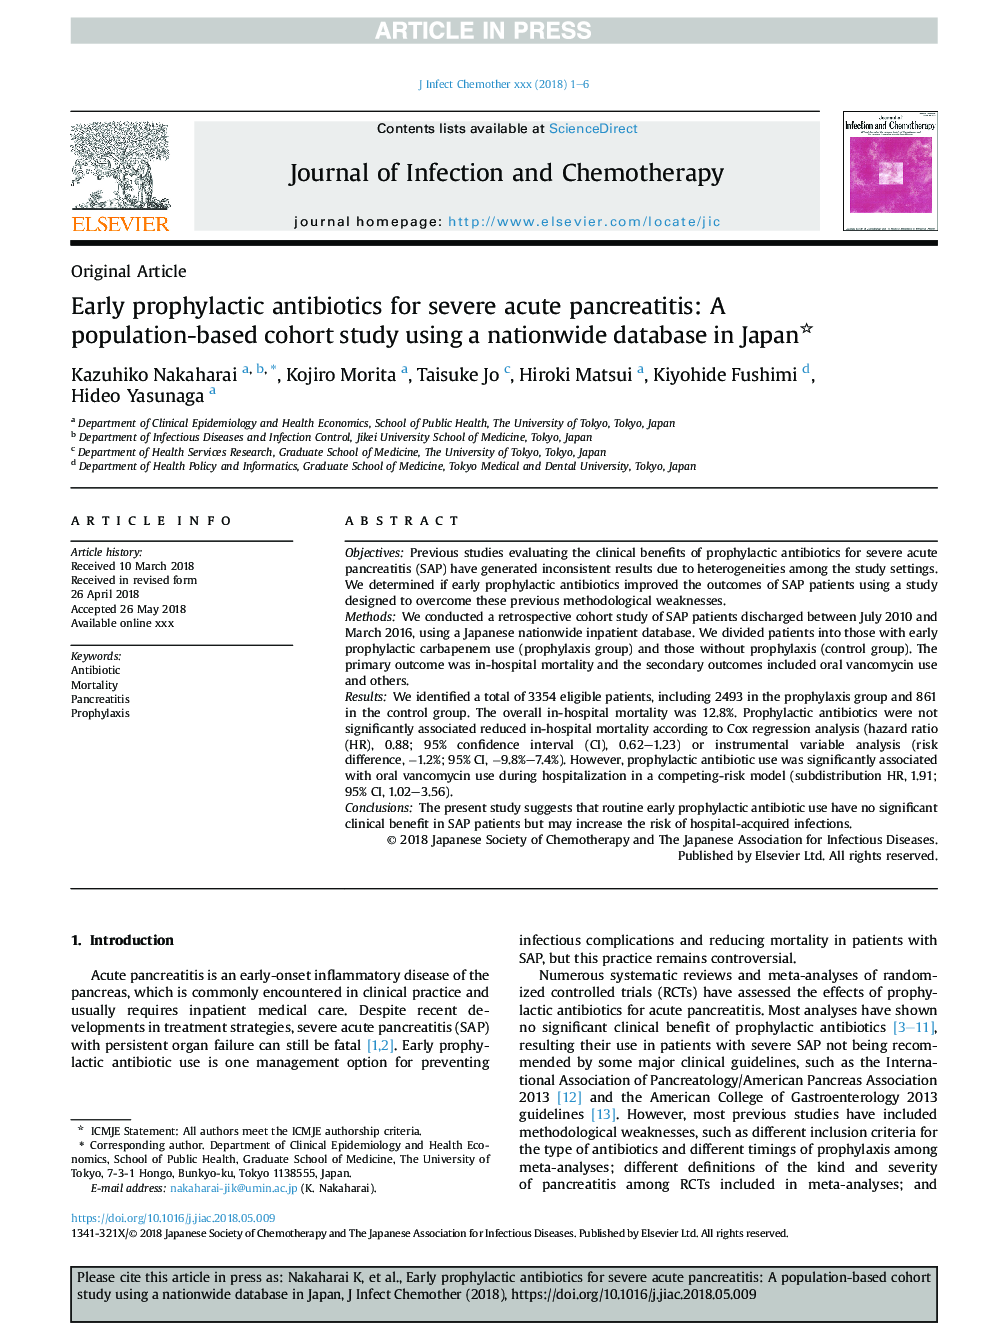 آنتی بیوتیک های پیشگیرانه اولیه برای پانکراتیت حاد شدید: یک مطالعه کوهورت مبتنی بر جمعیت با استفاده از یک پایگاه داده در سراسر کشور در ژاپن